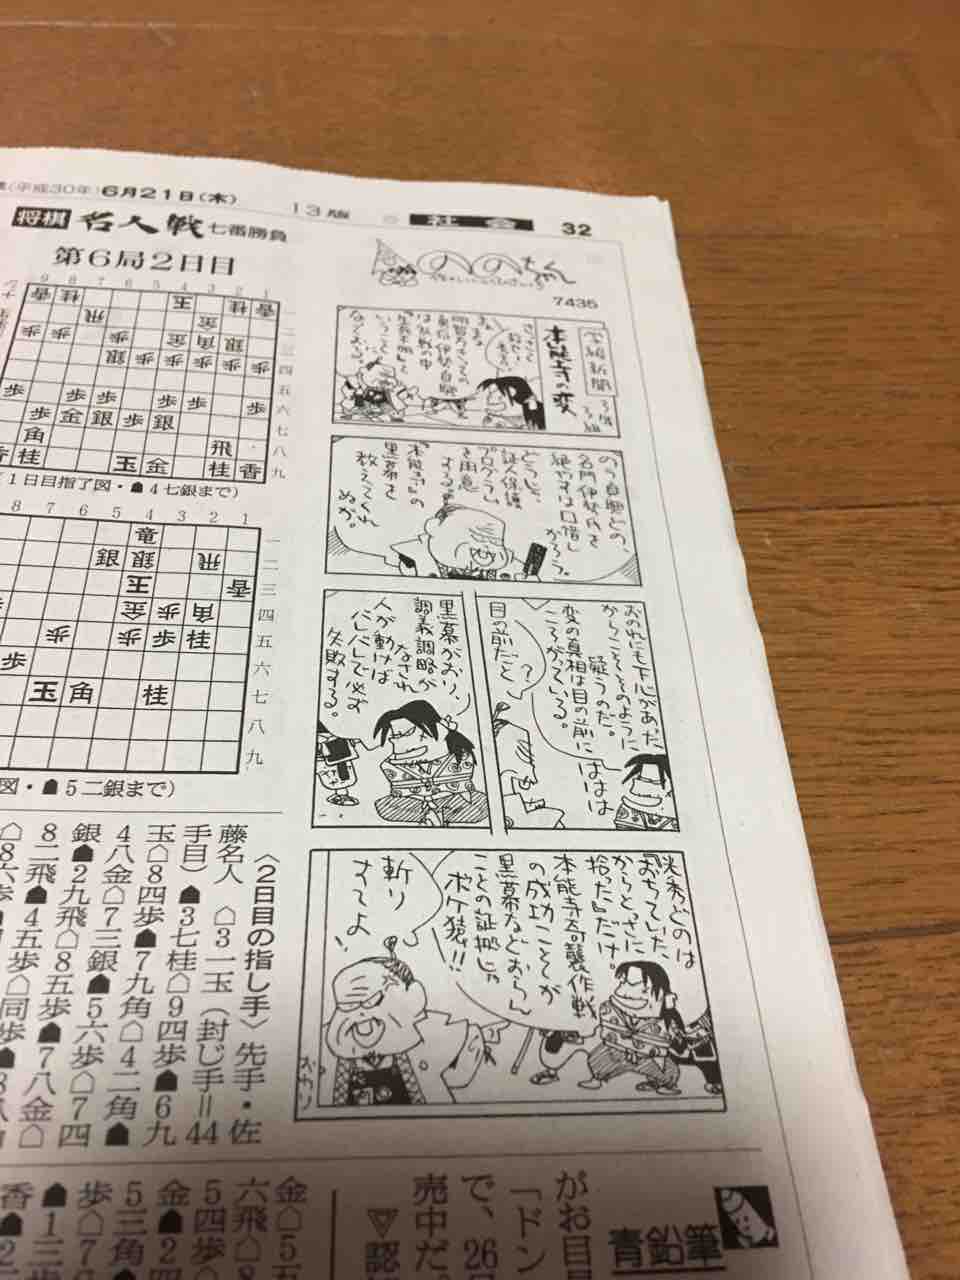 朝日新聞の4コマ漫画 壊れる ニワカ歴史オタが語る雑記